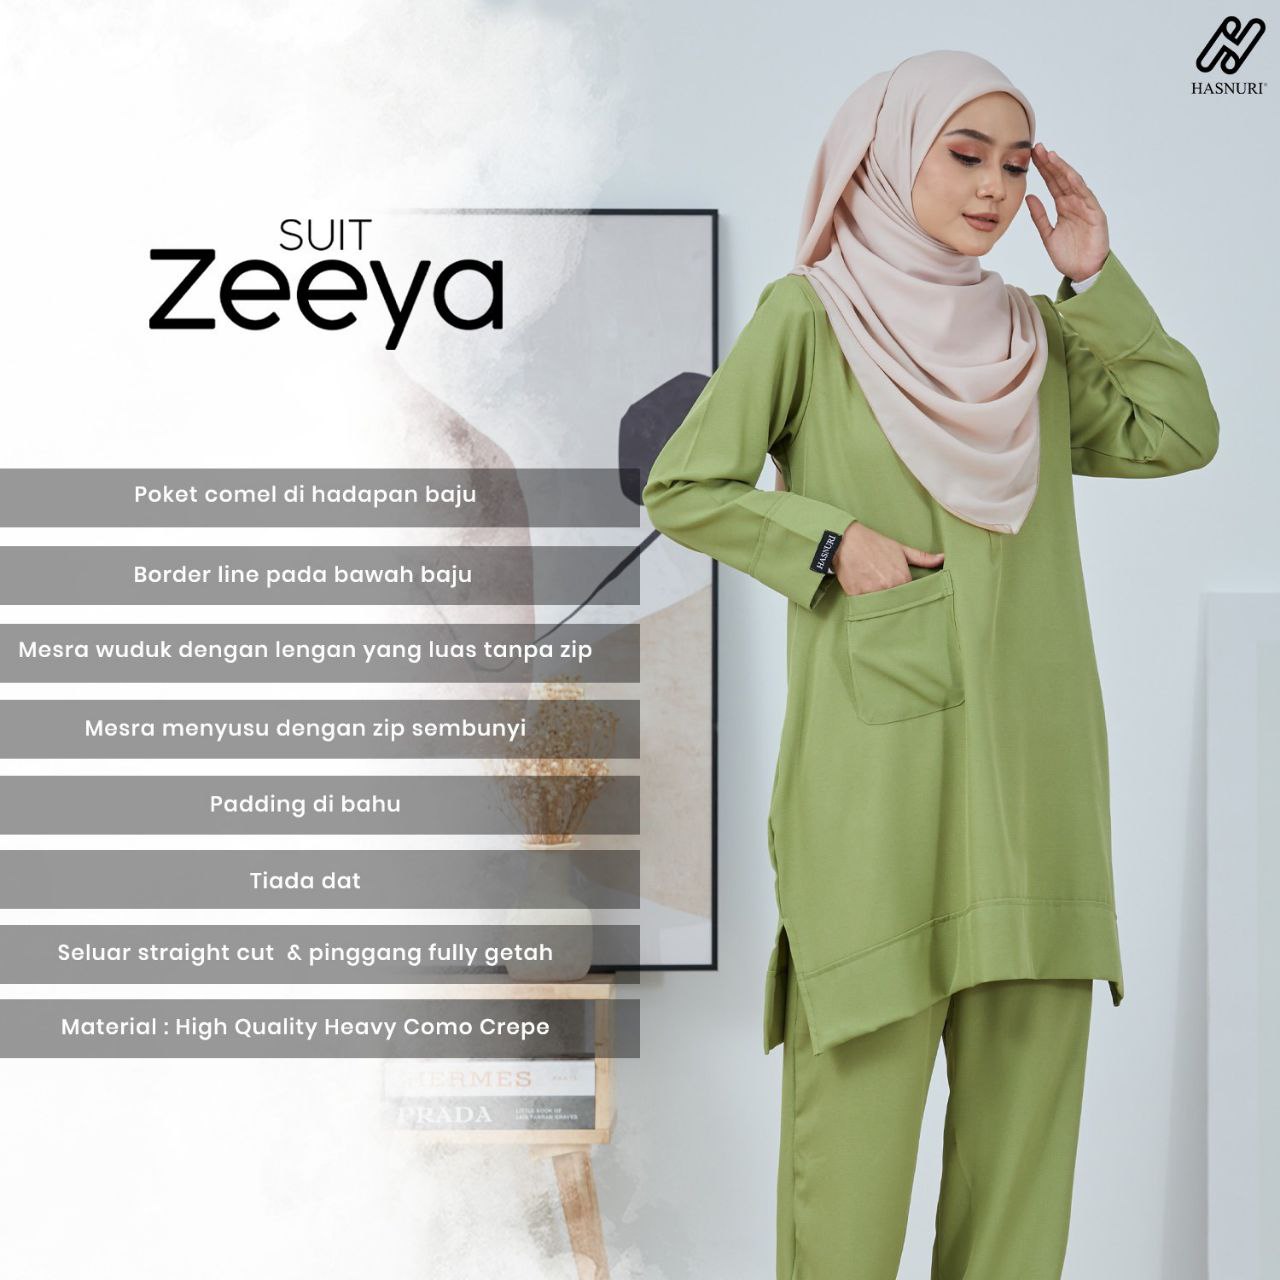 Suit Zeeya - Magenta